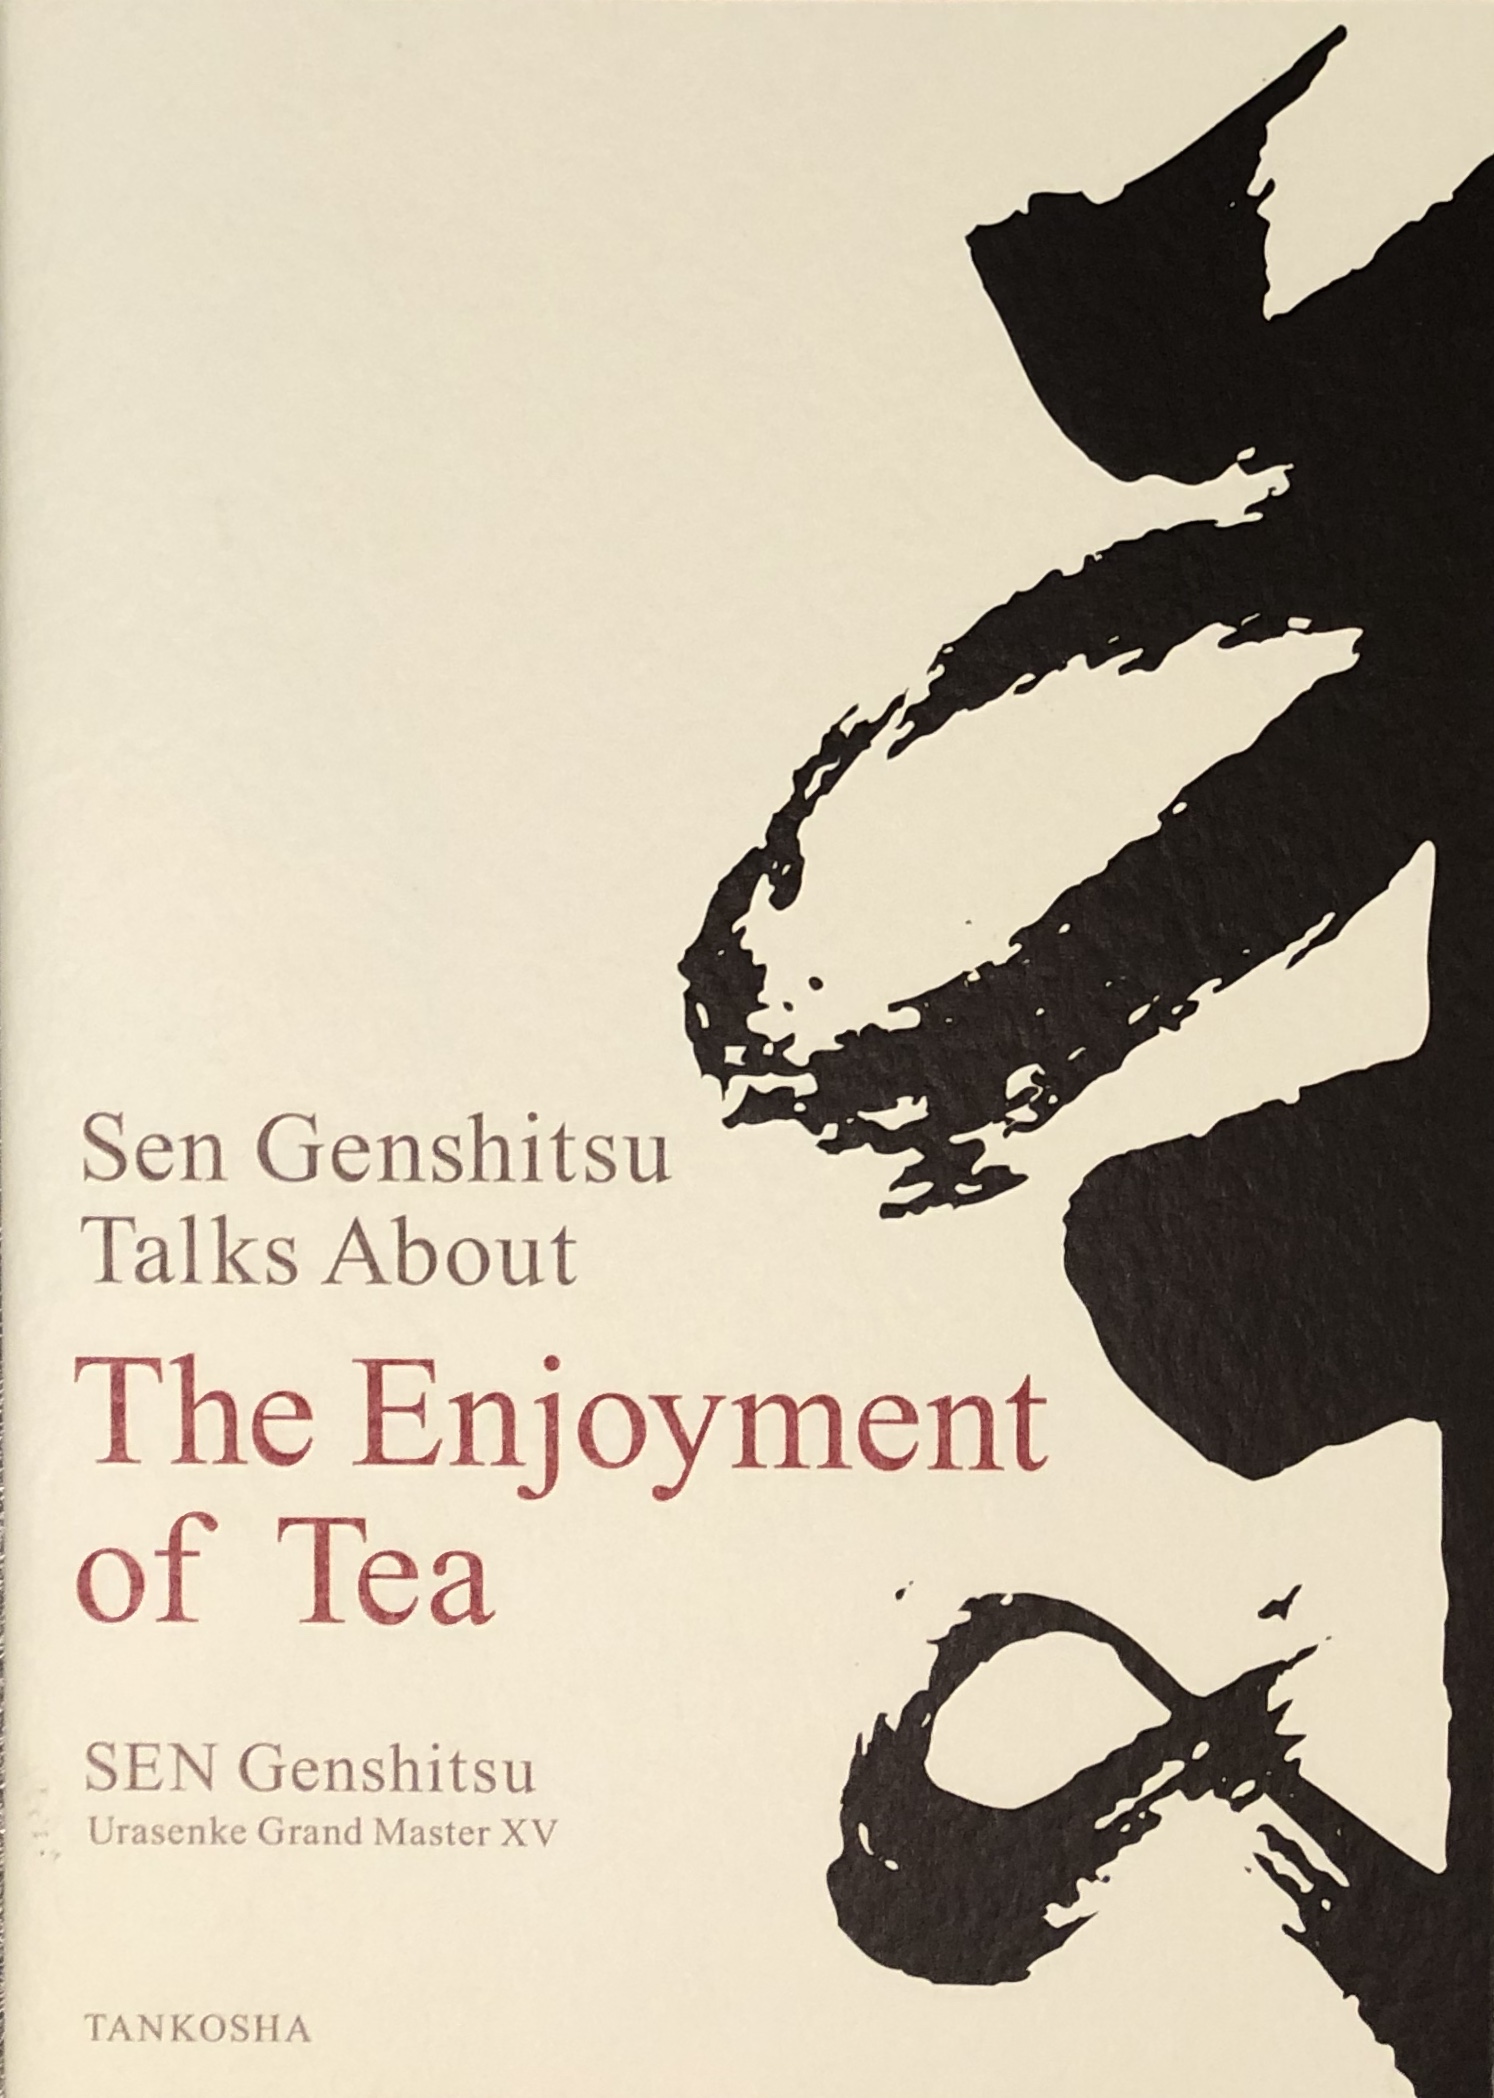 The Enjoyment of Tea